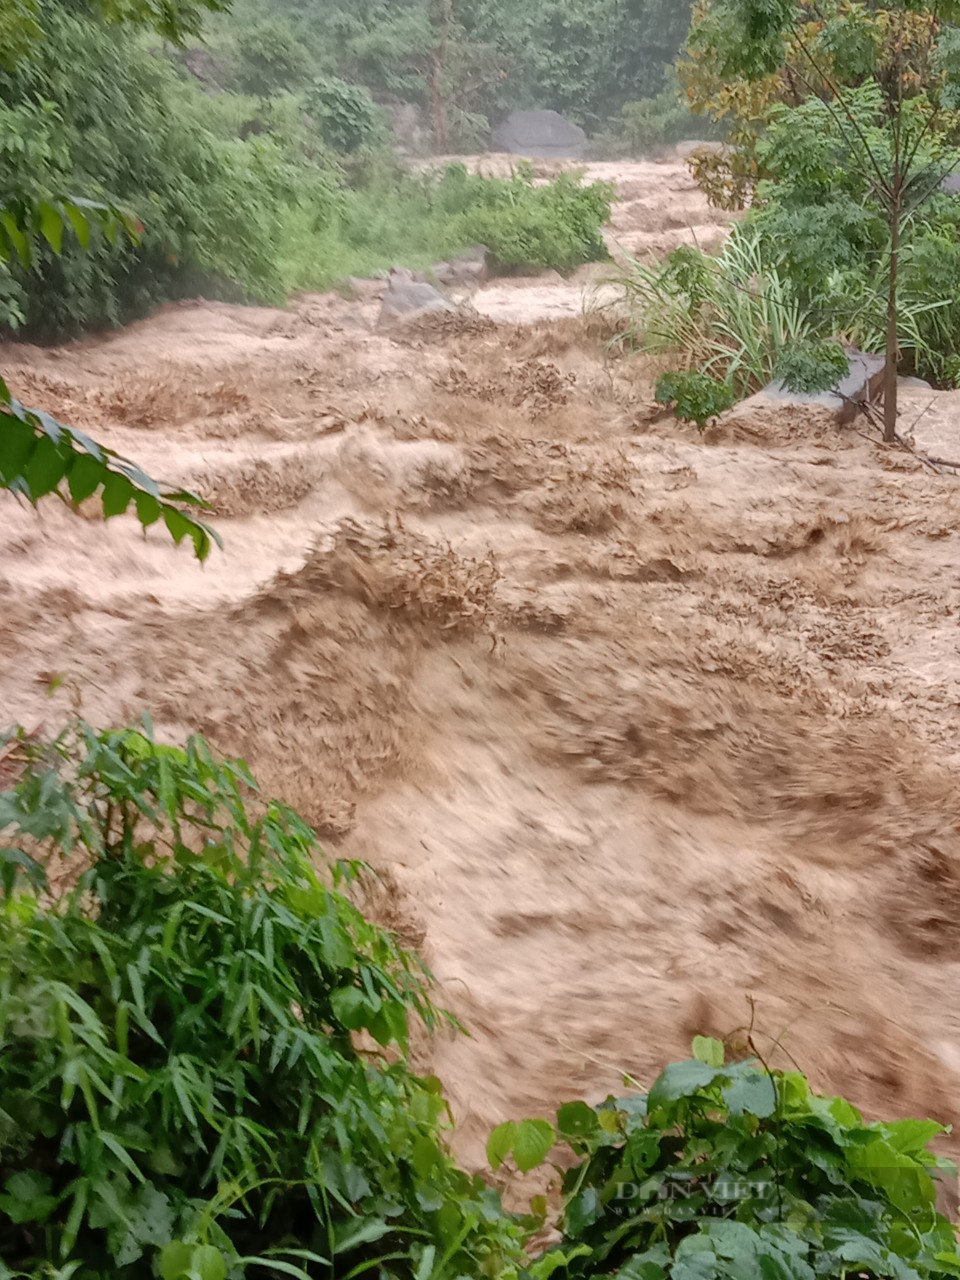 Thanh Hoá: Huyện Mường Lát sơ tán người dân vì mưa lớn gây sạt lở đất ở nhiều nơi - Ảnh 1.